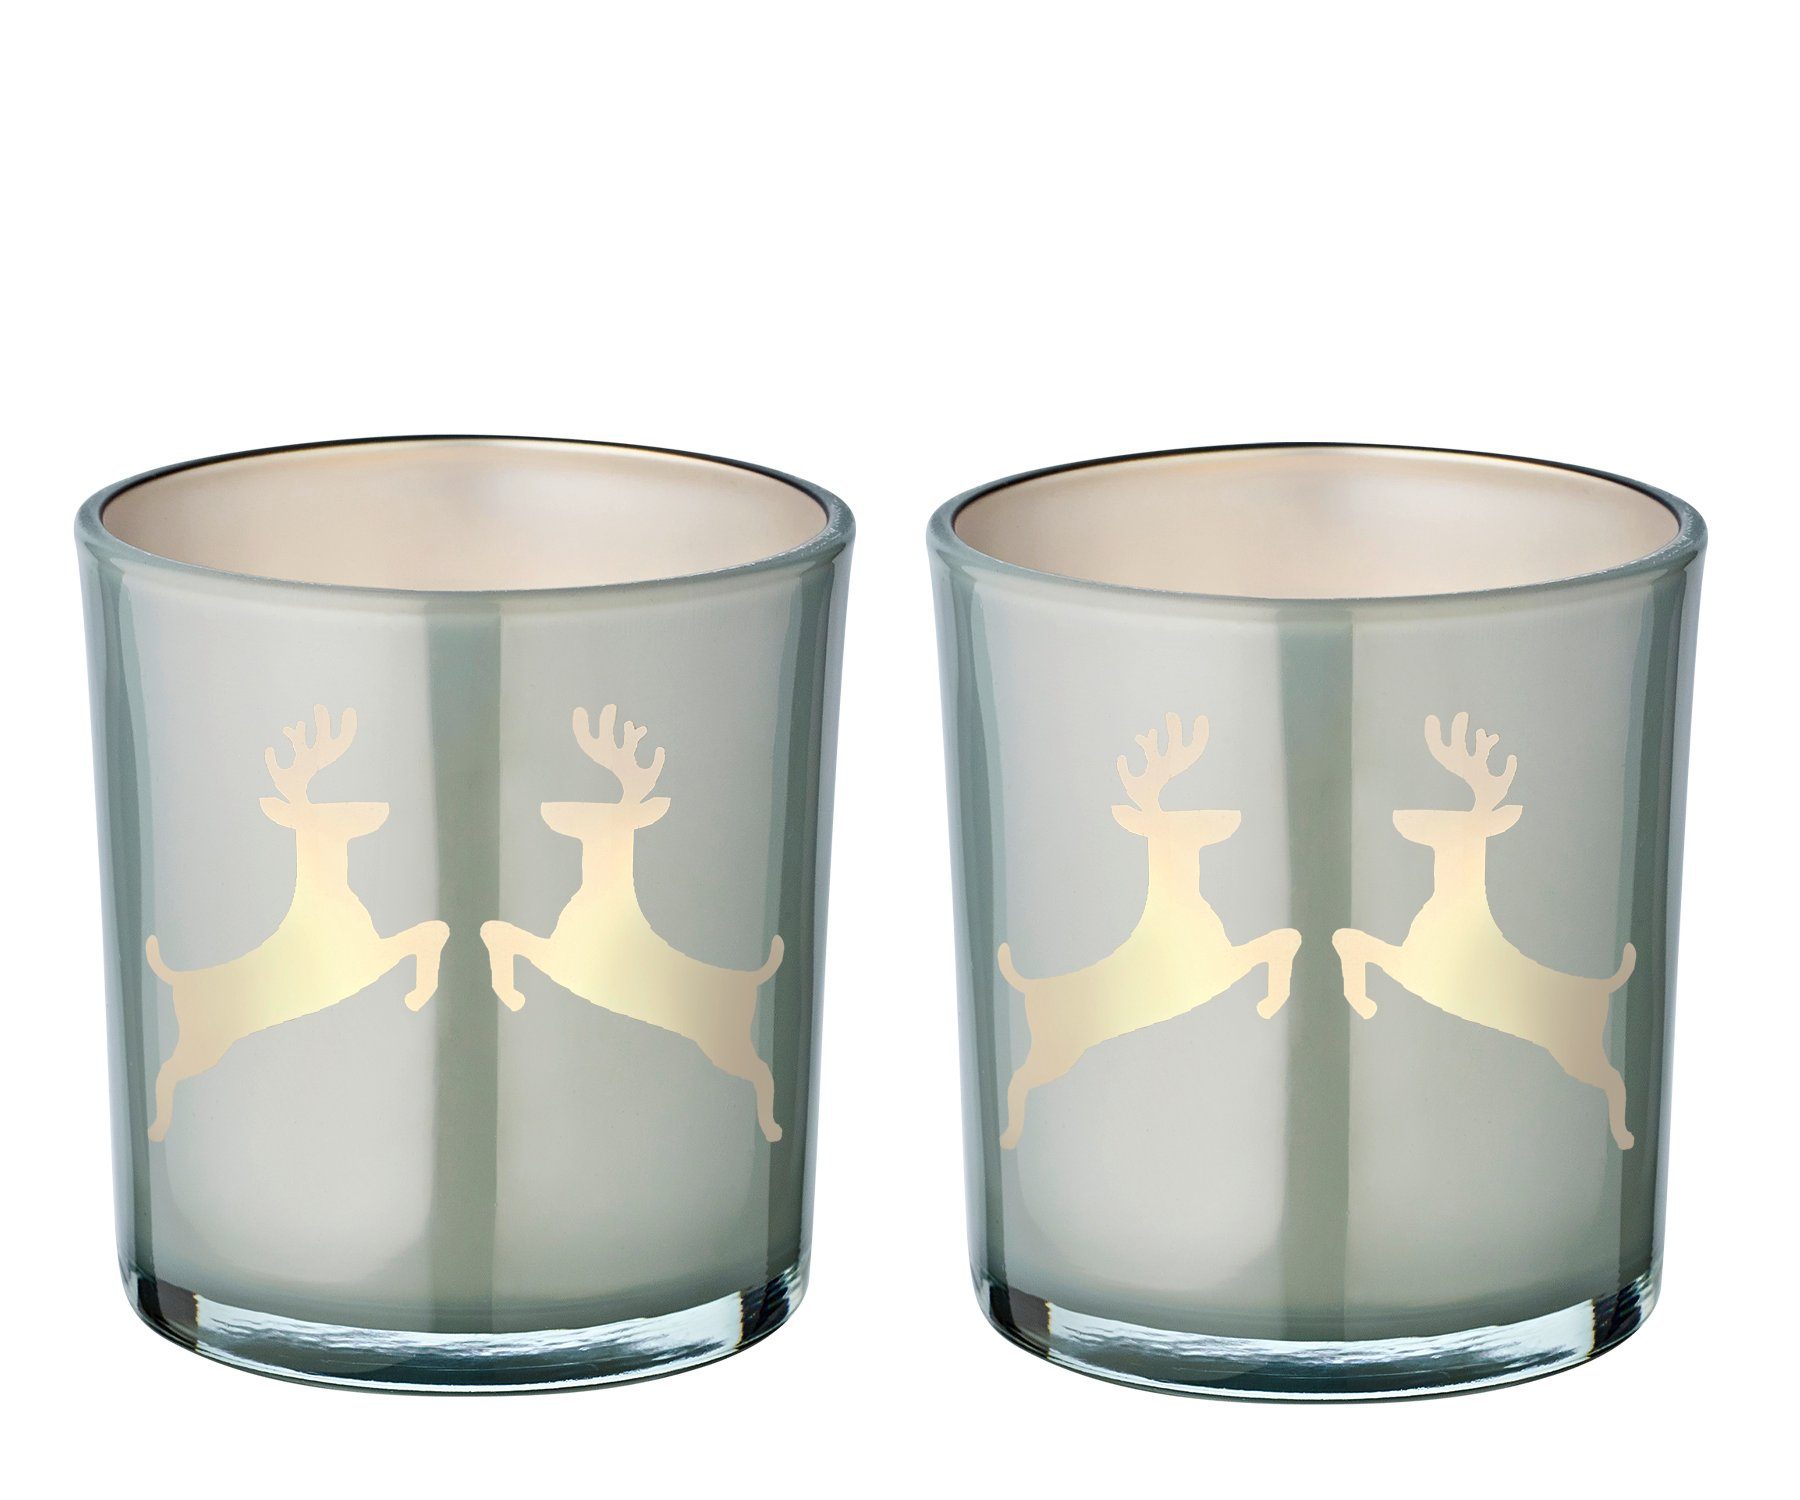 EDZARD Windlicht Loki (Set, 2er), Höhe 8 cm, Ø 7,5 cm, Windlicht, Kerzenglas mit Rentier-Motiv in Grau, Teelichtglas für Teelichter